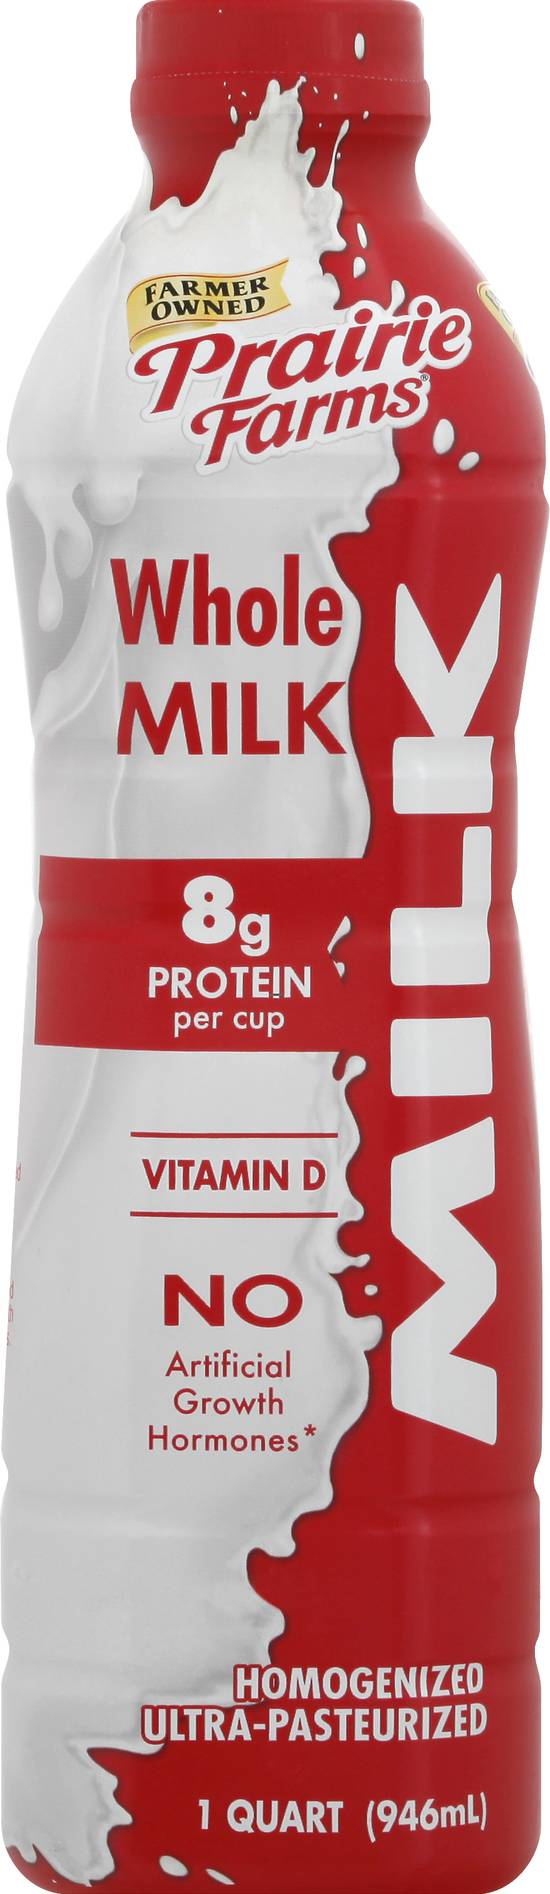 Prairie Farms Whole Milk (1 qt)